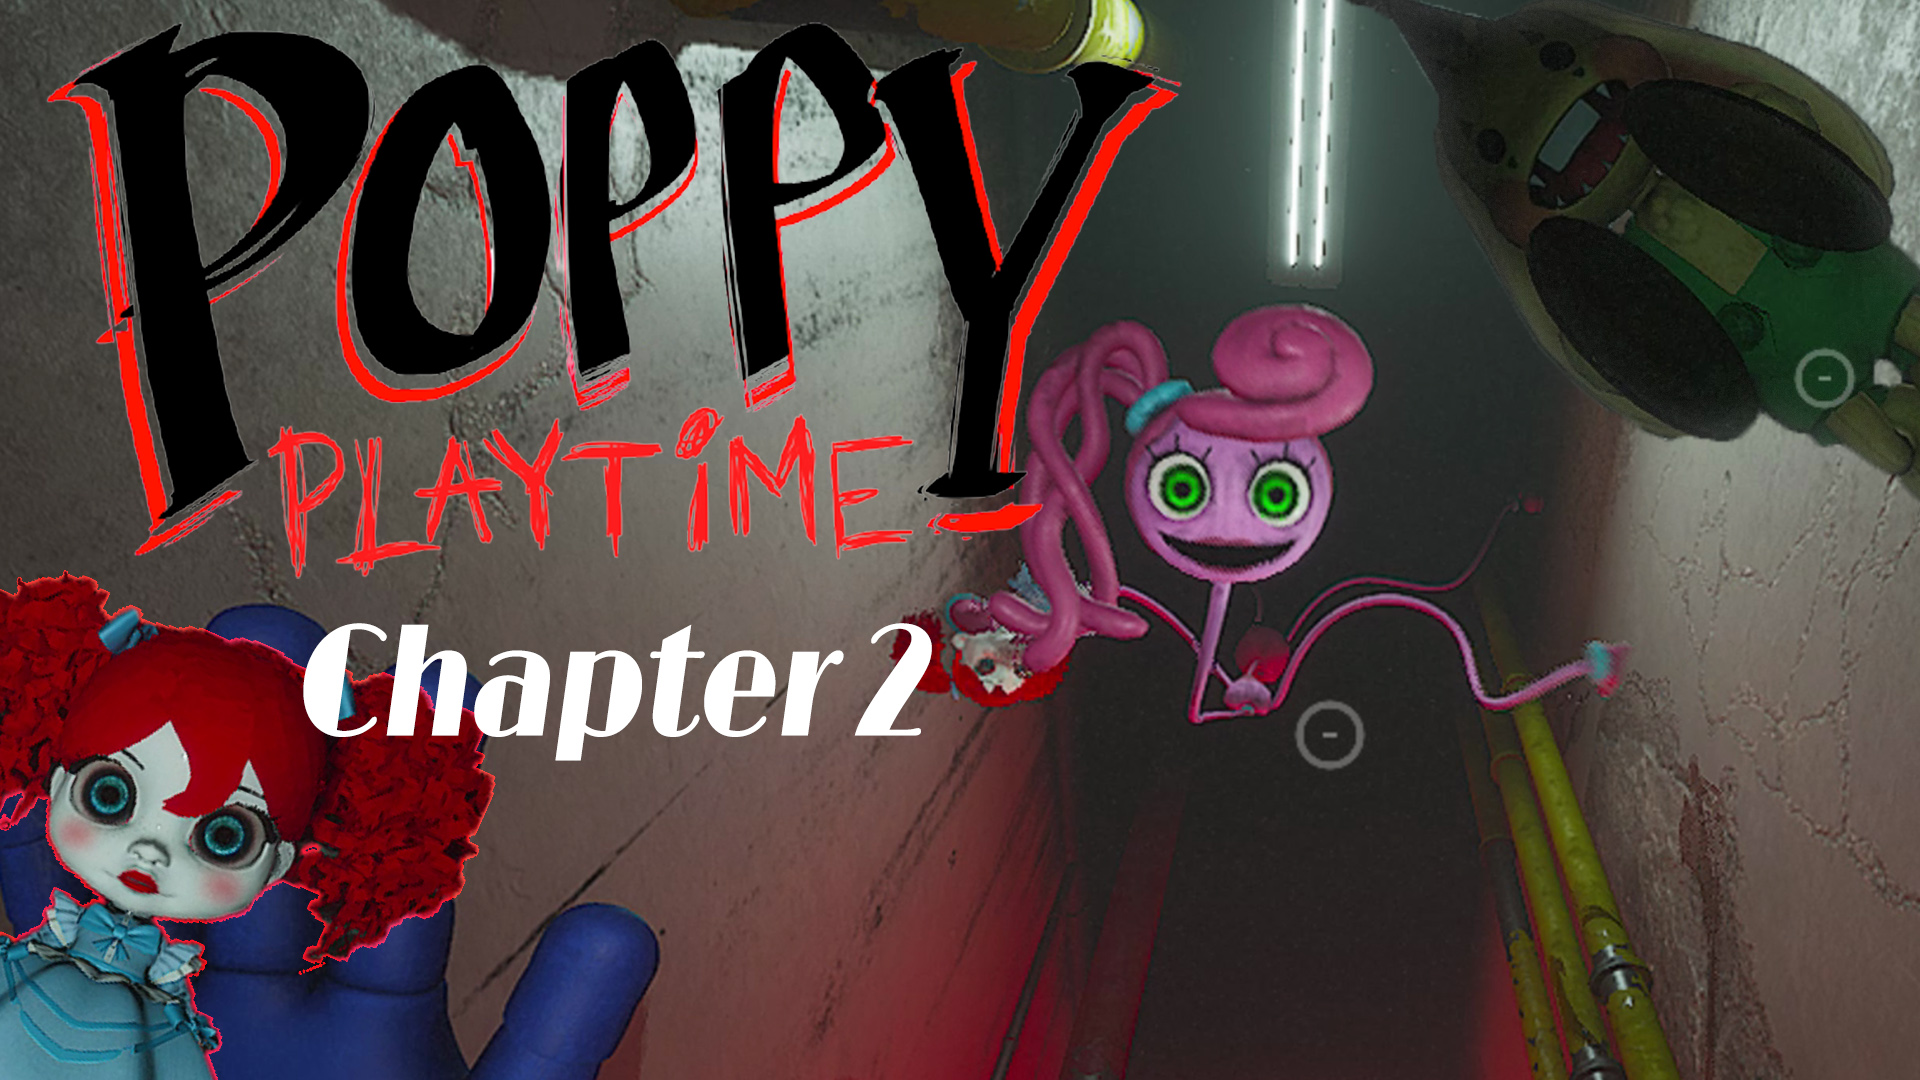 Poppy playtime 2 глава читы